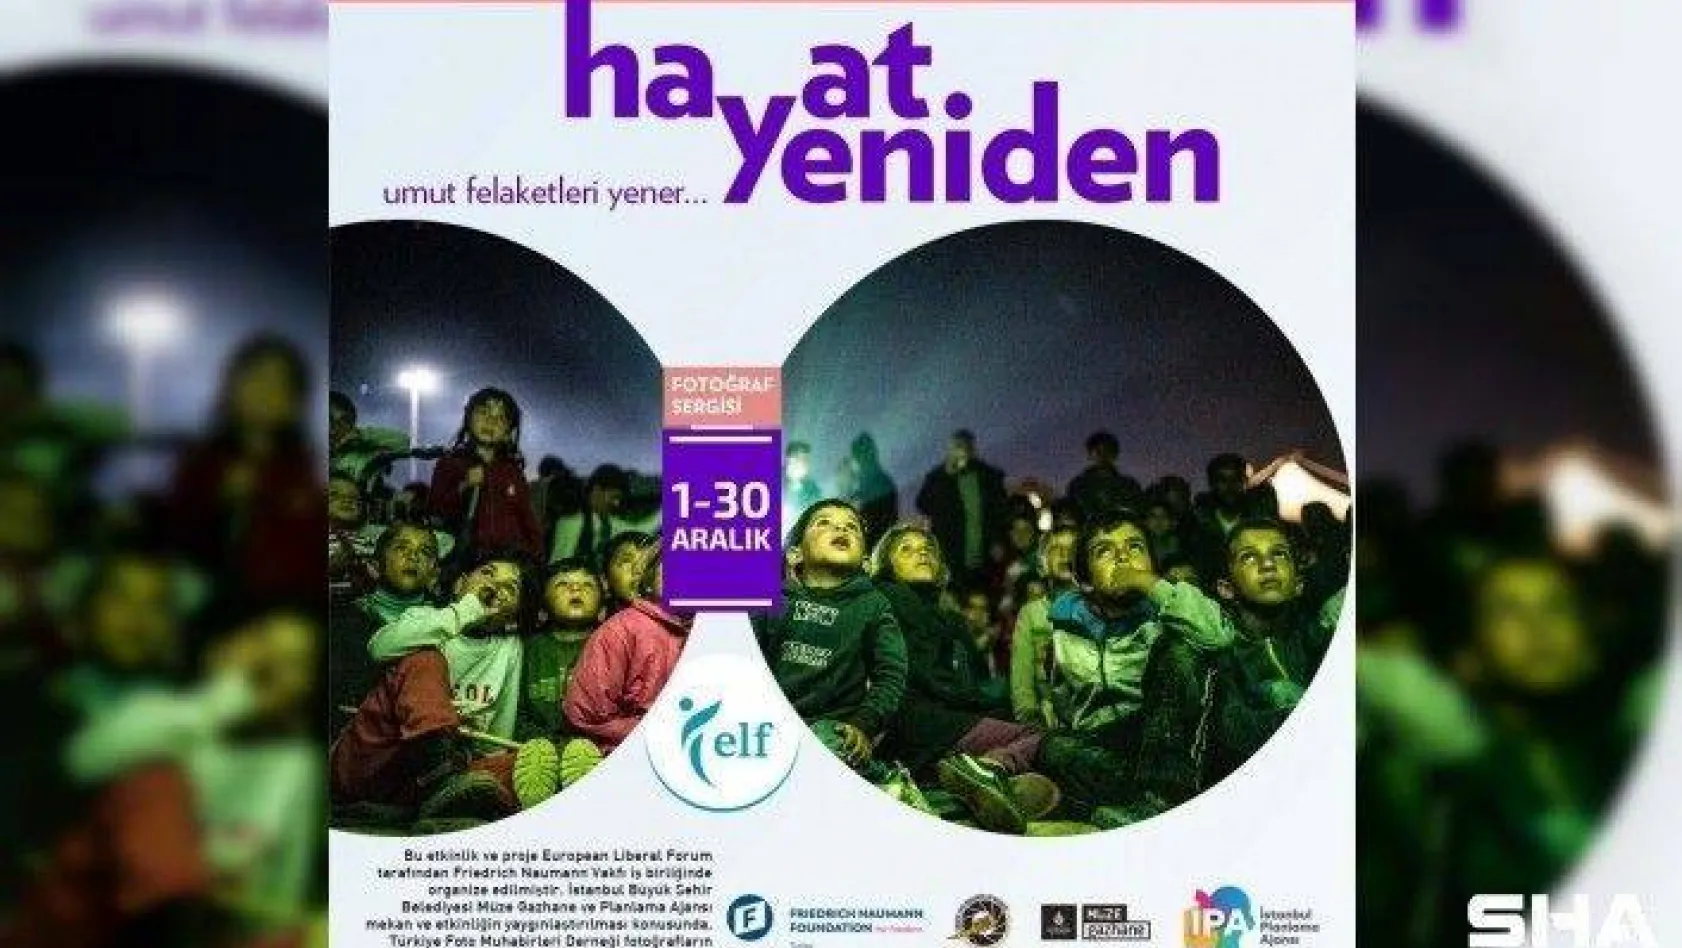 Kadıköy'de 'Hayat Yeniden" adlı belgeselin galası yapıldı